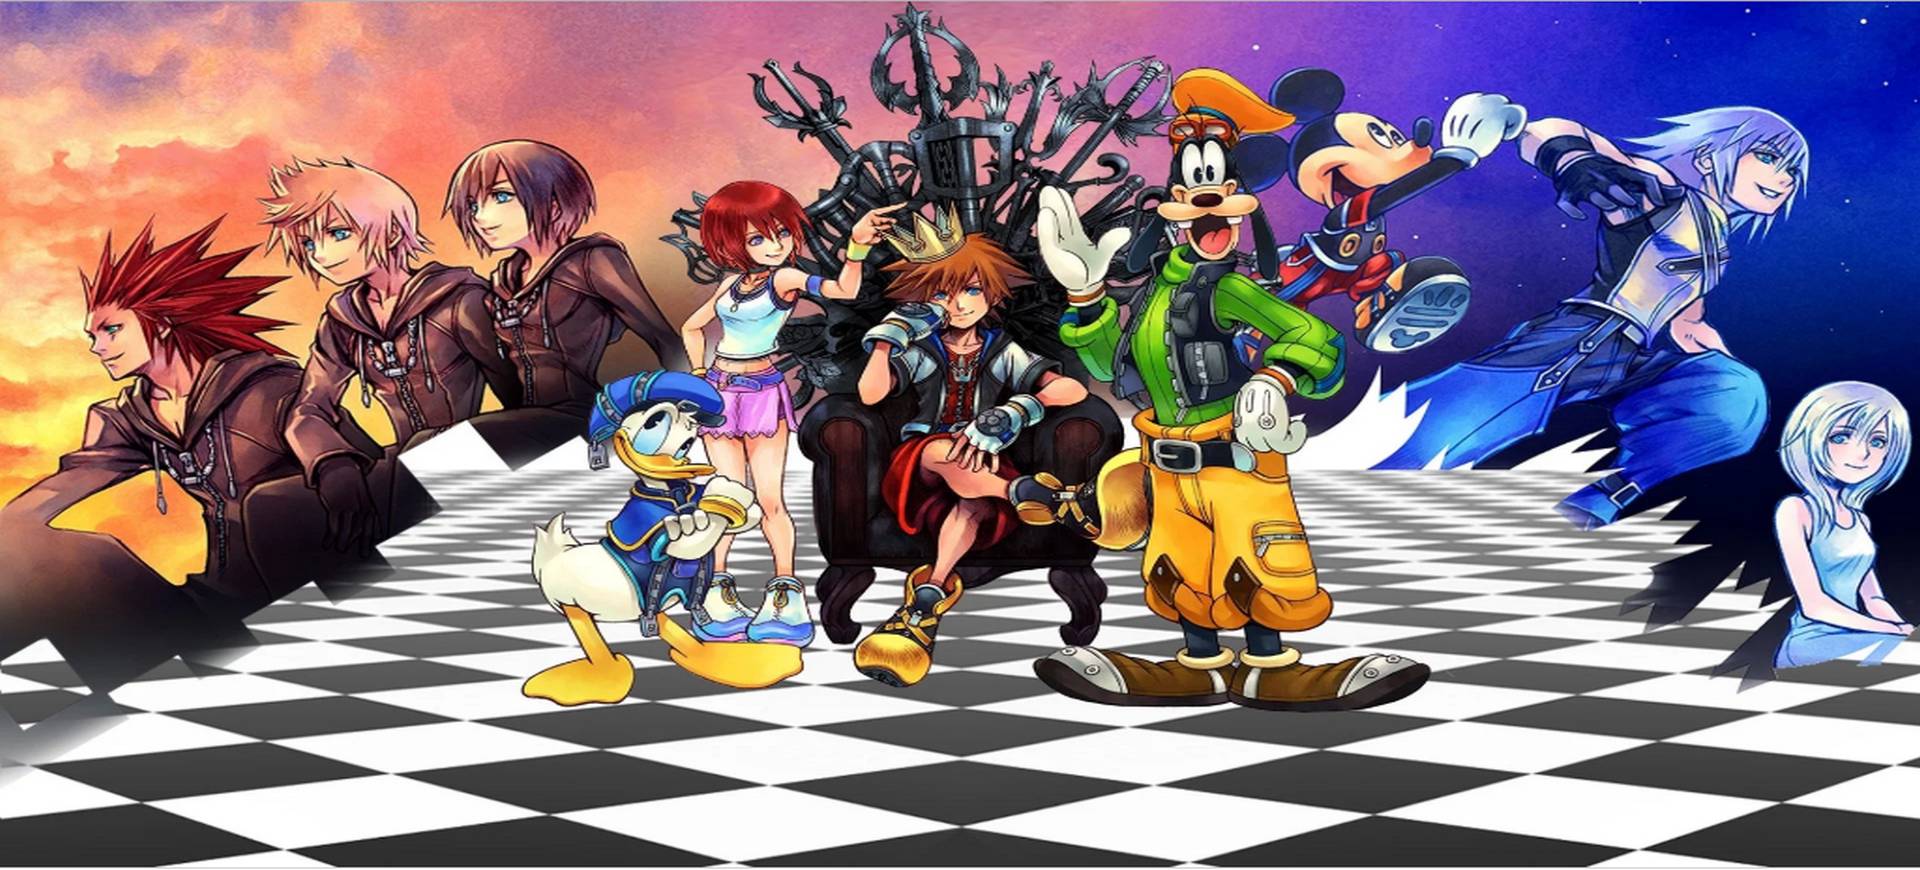 Kingdom Hearts – The Story So Far